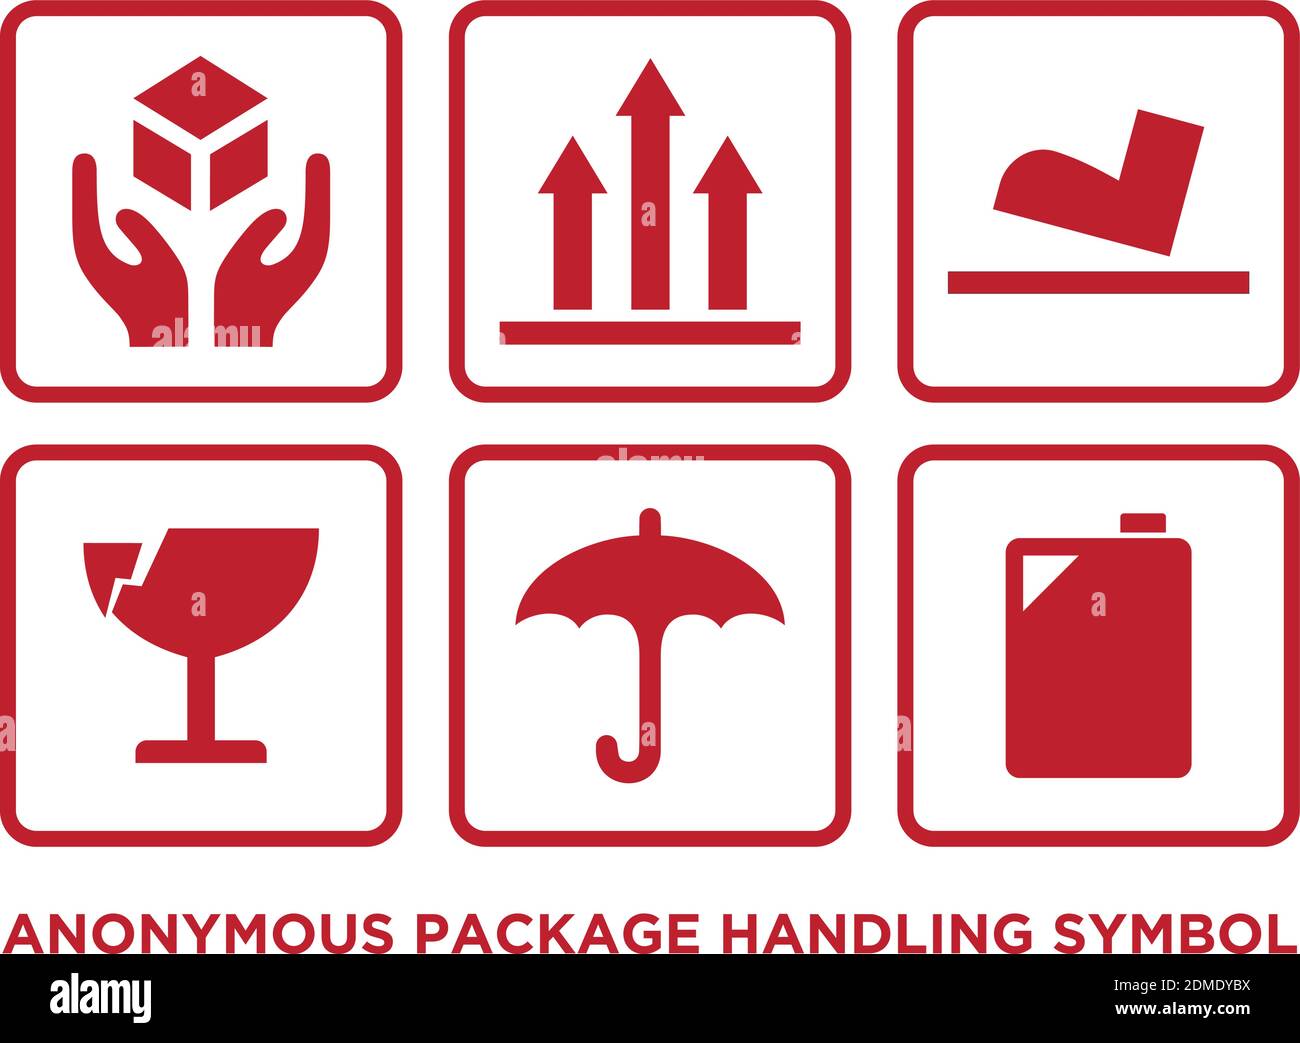 Simbolo di manipolazione anonima della confezione piatta di colore rosso. Simbolo di gestione delle icone. Illustrazione vettoriale EPS.8 EPS.10 Illustrazione Vettoriale